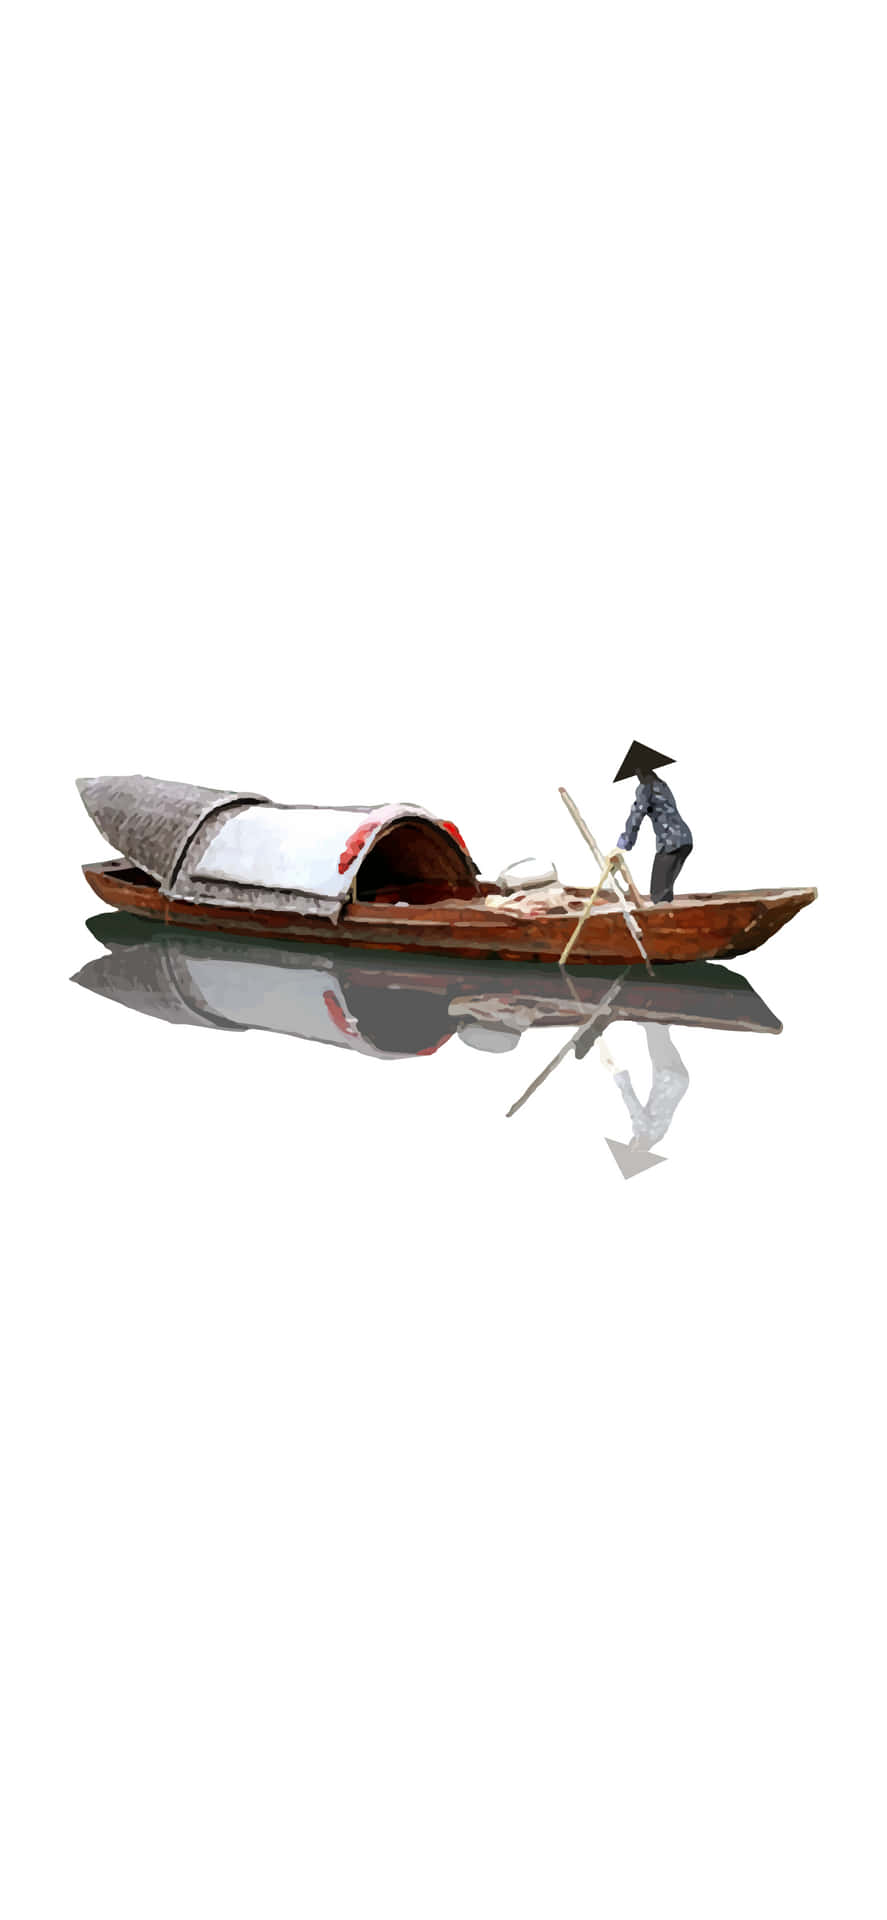 Einkleines Boot Mit Einem Mann Darauf. Wallpaper